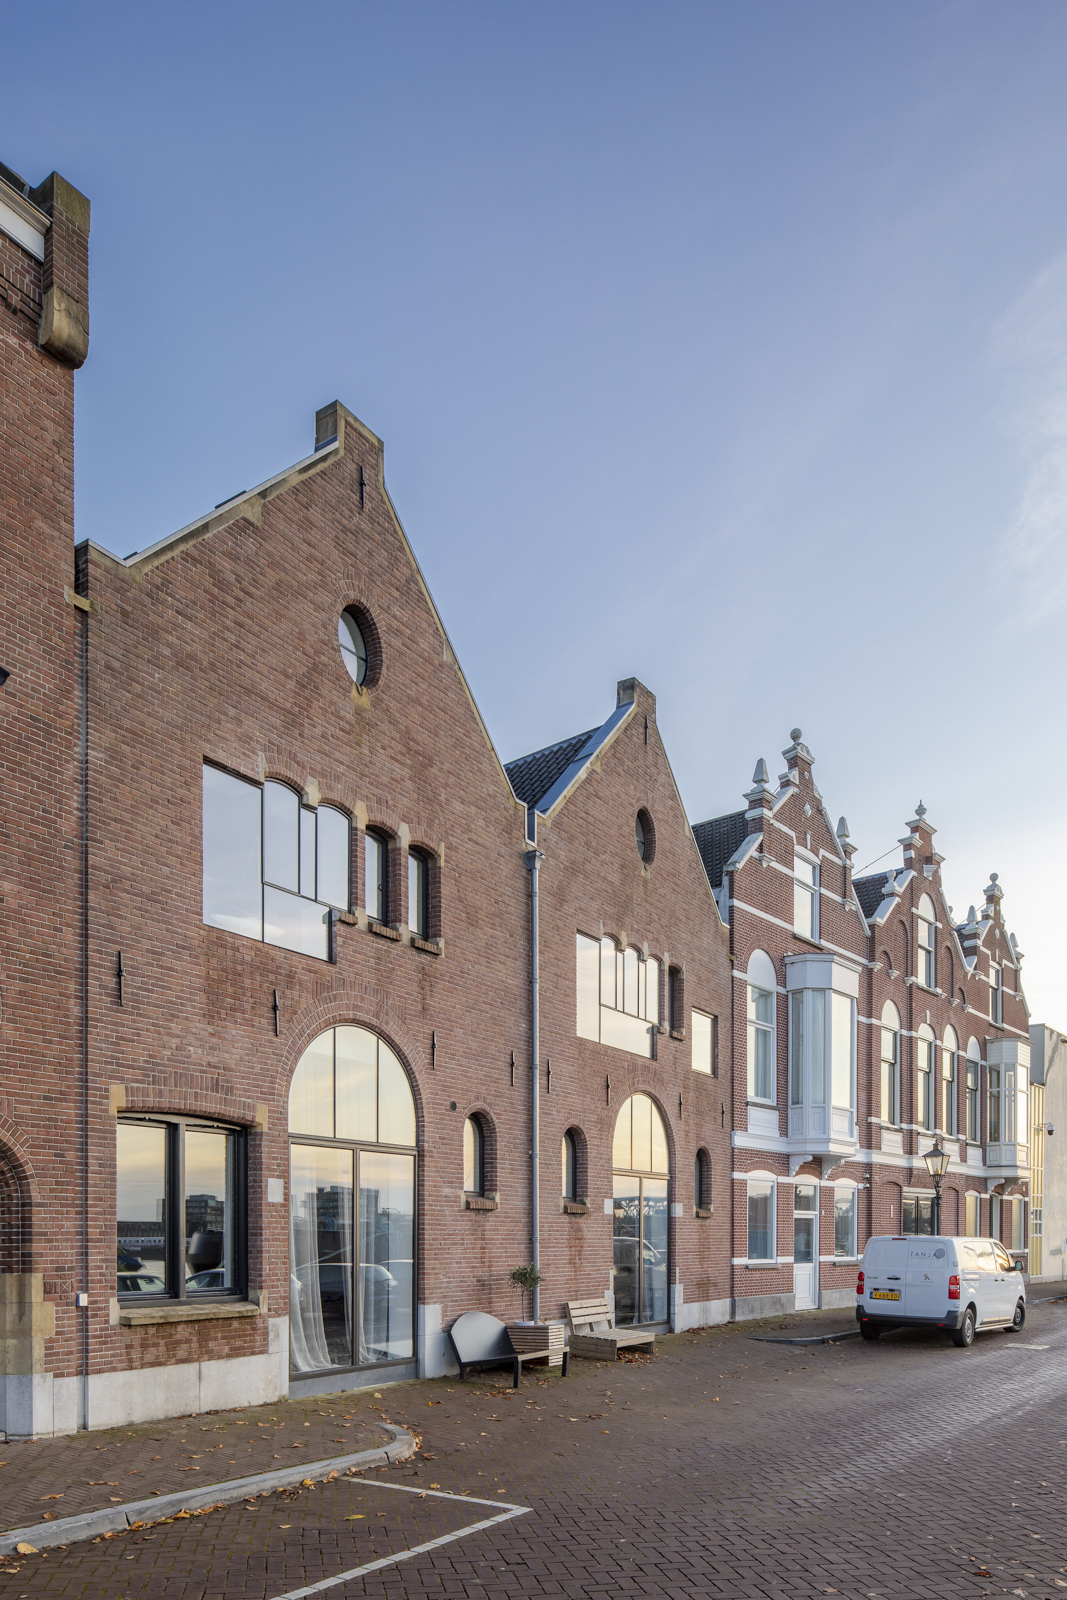 https://www.heyligersarchitects.nl/wp-content/uploads/2021/10/Heyligers_Dordrecht_woonhuis_particulier_interieur_transformatie_architect11_WoutervanderSar-40.jpg